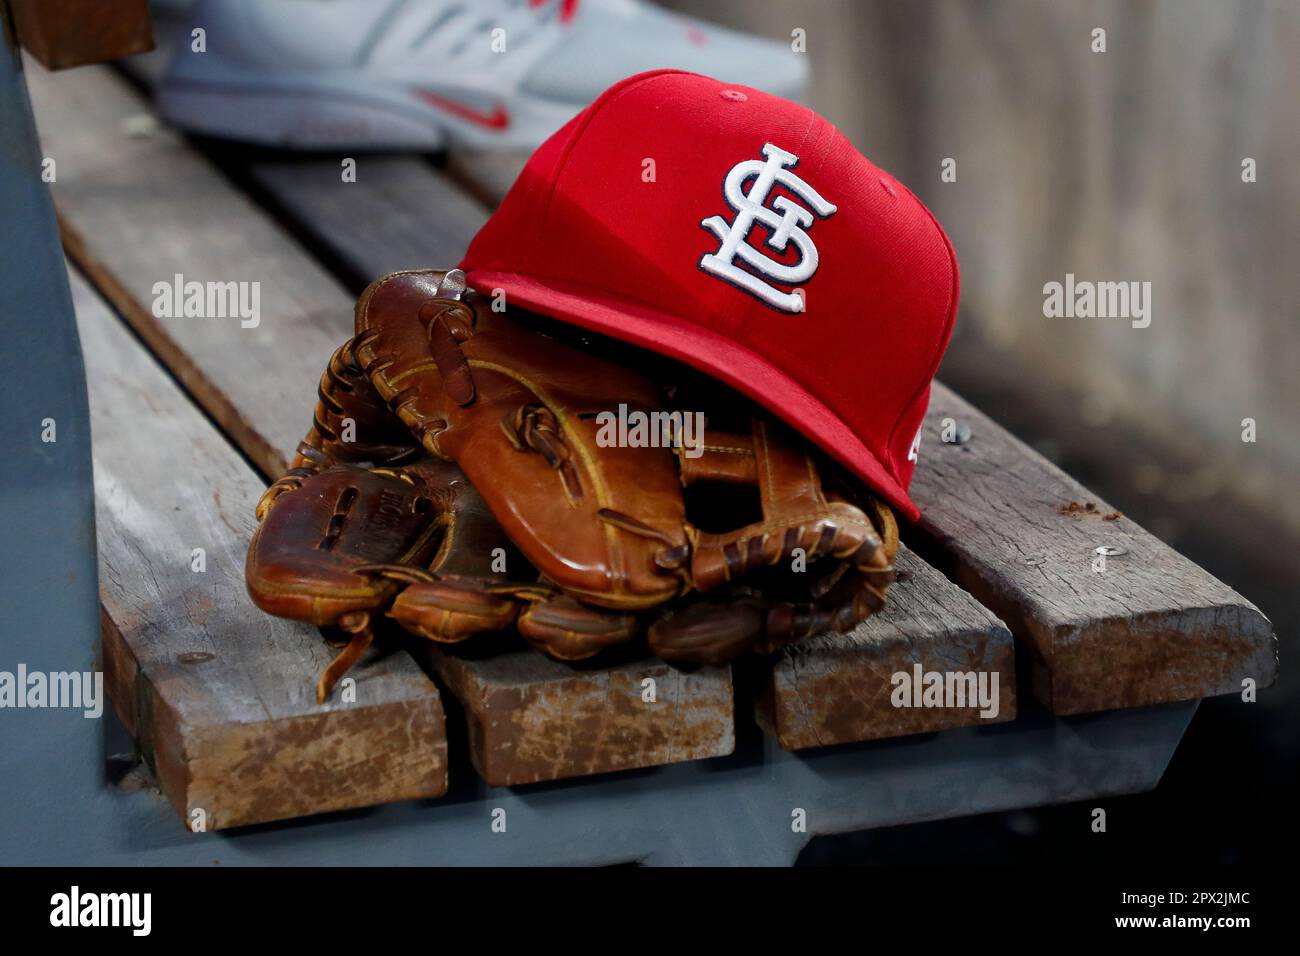 Rawlings St. Louis Cardinals Team Logo Glove - Each